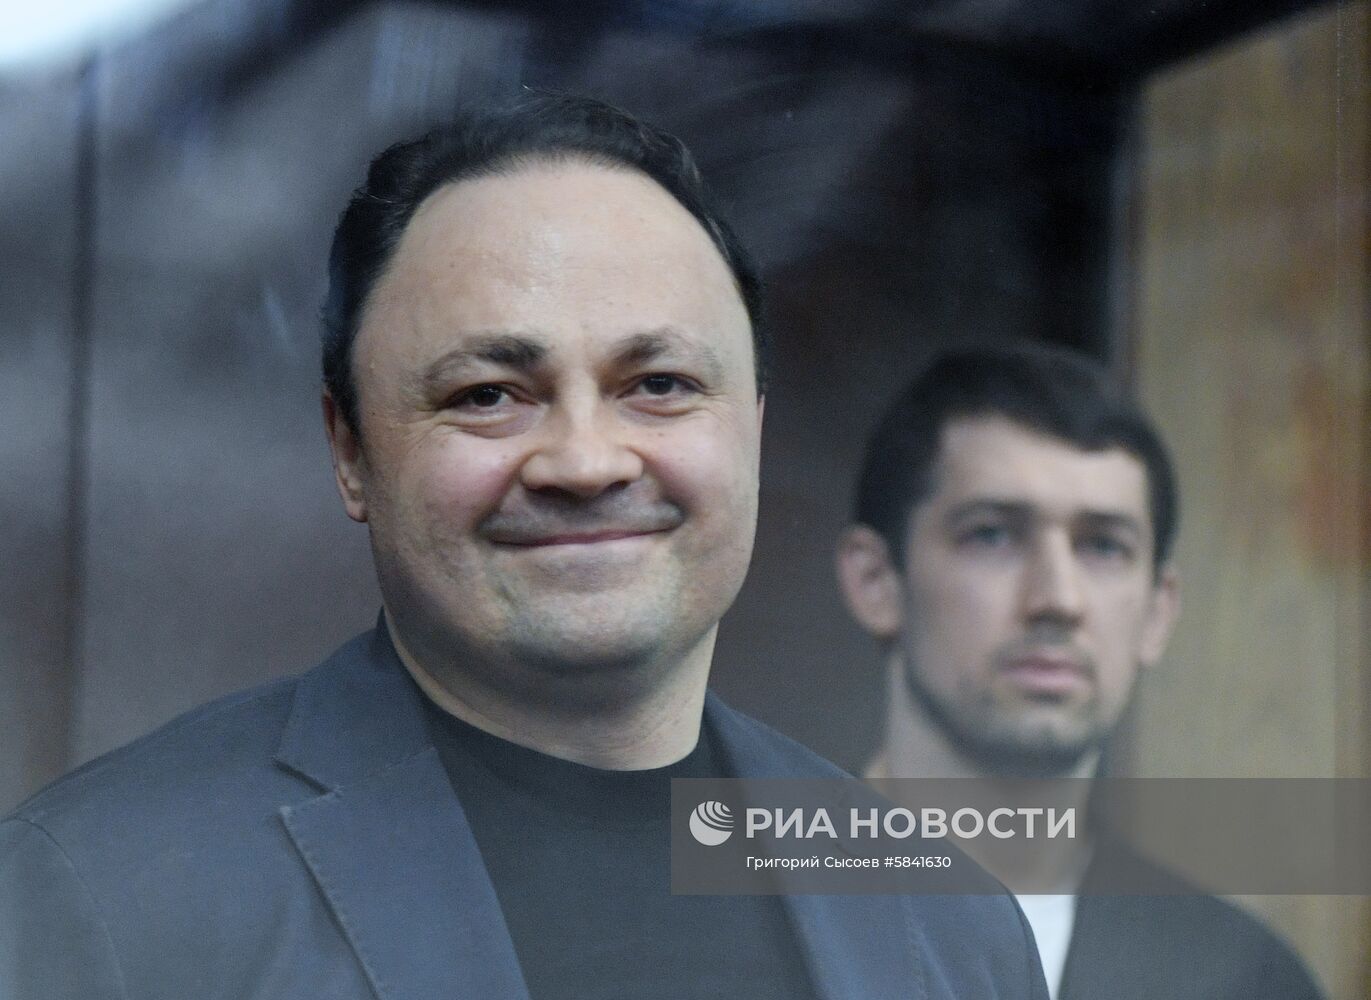 Оглашение приговора бывшему мэру Владивостока И. Пушкареву